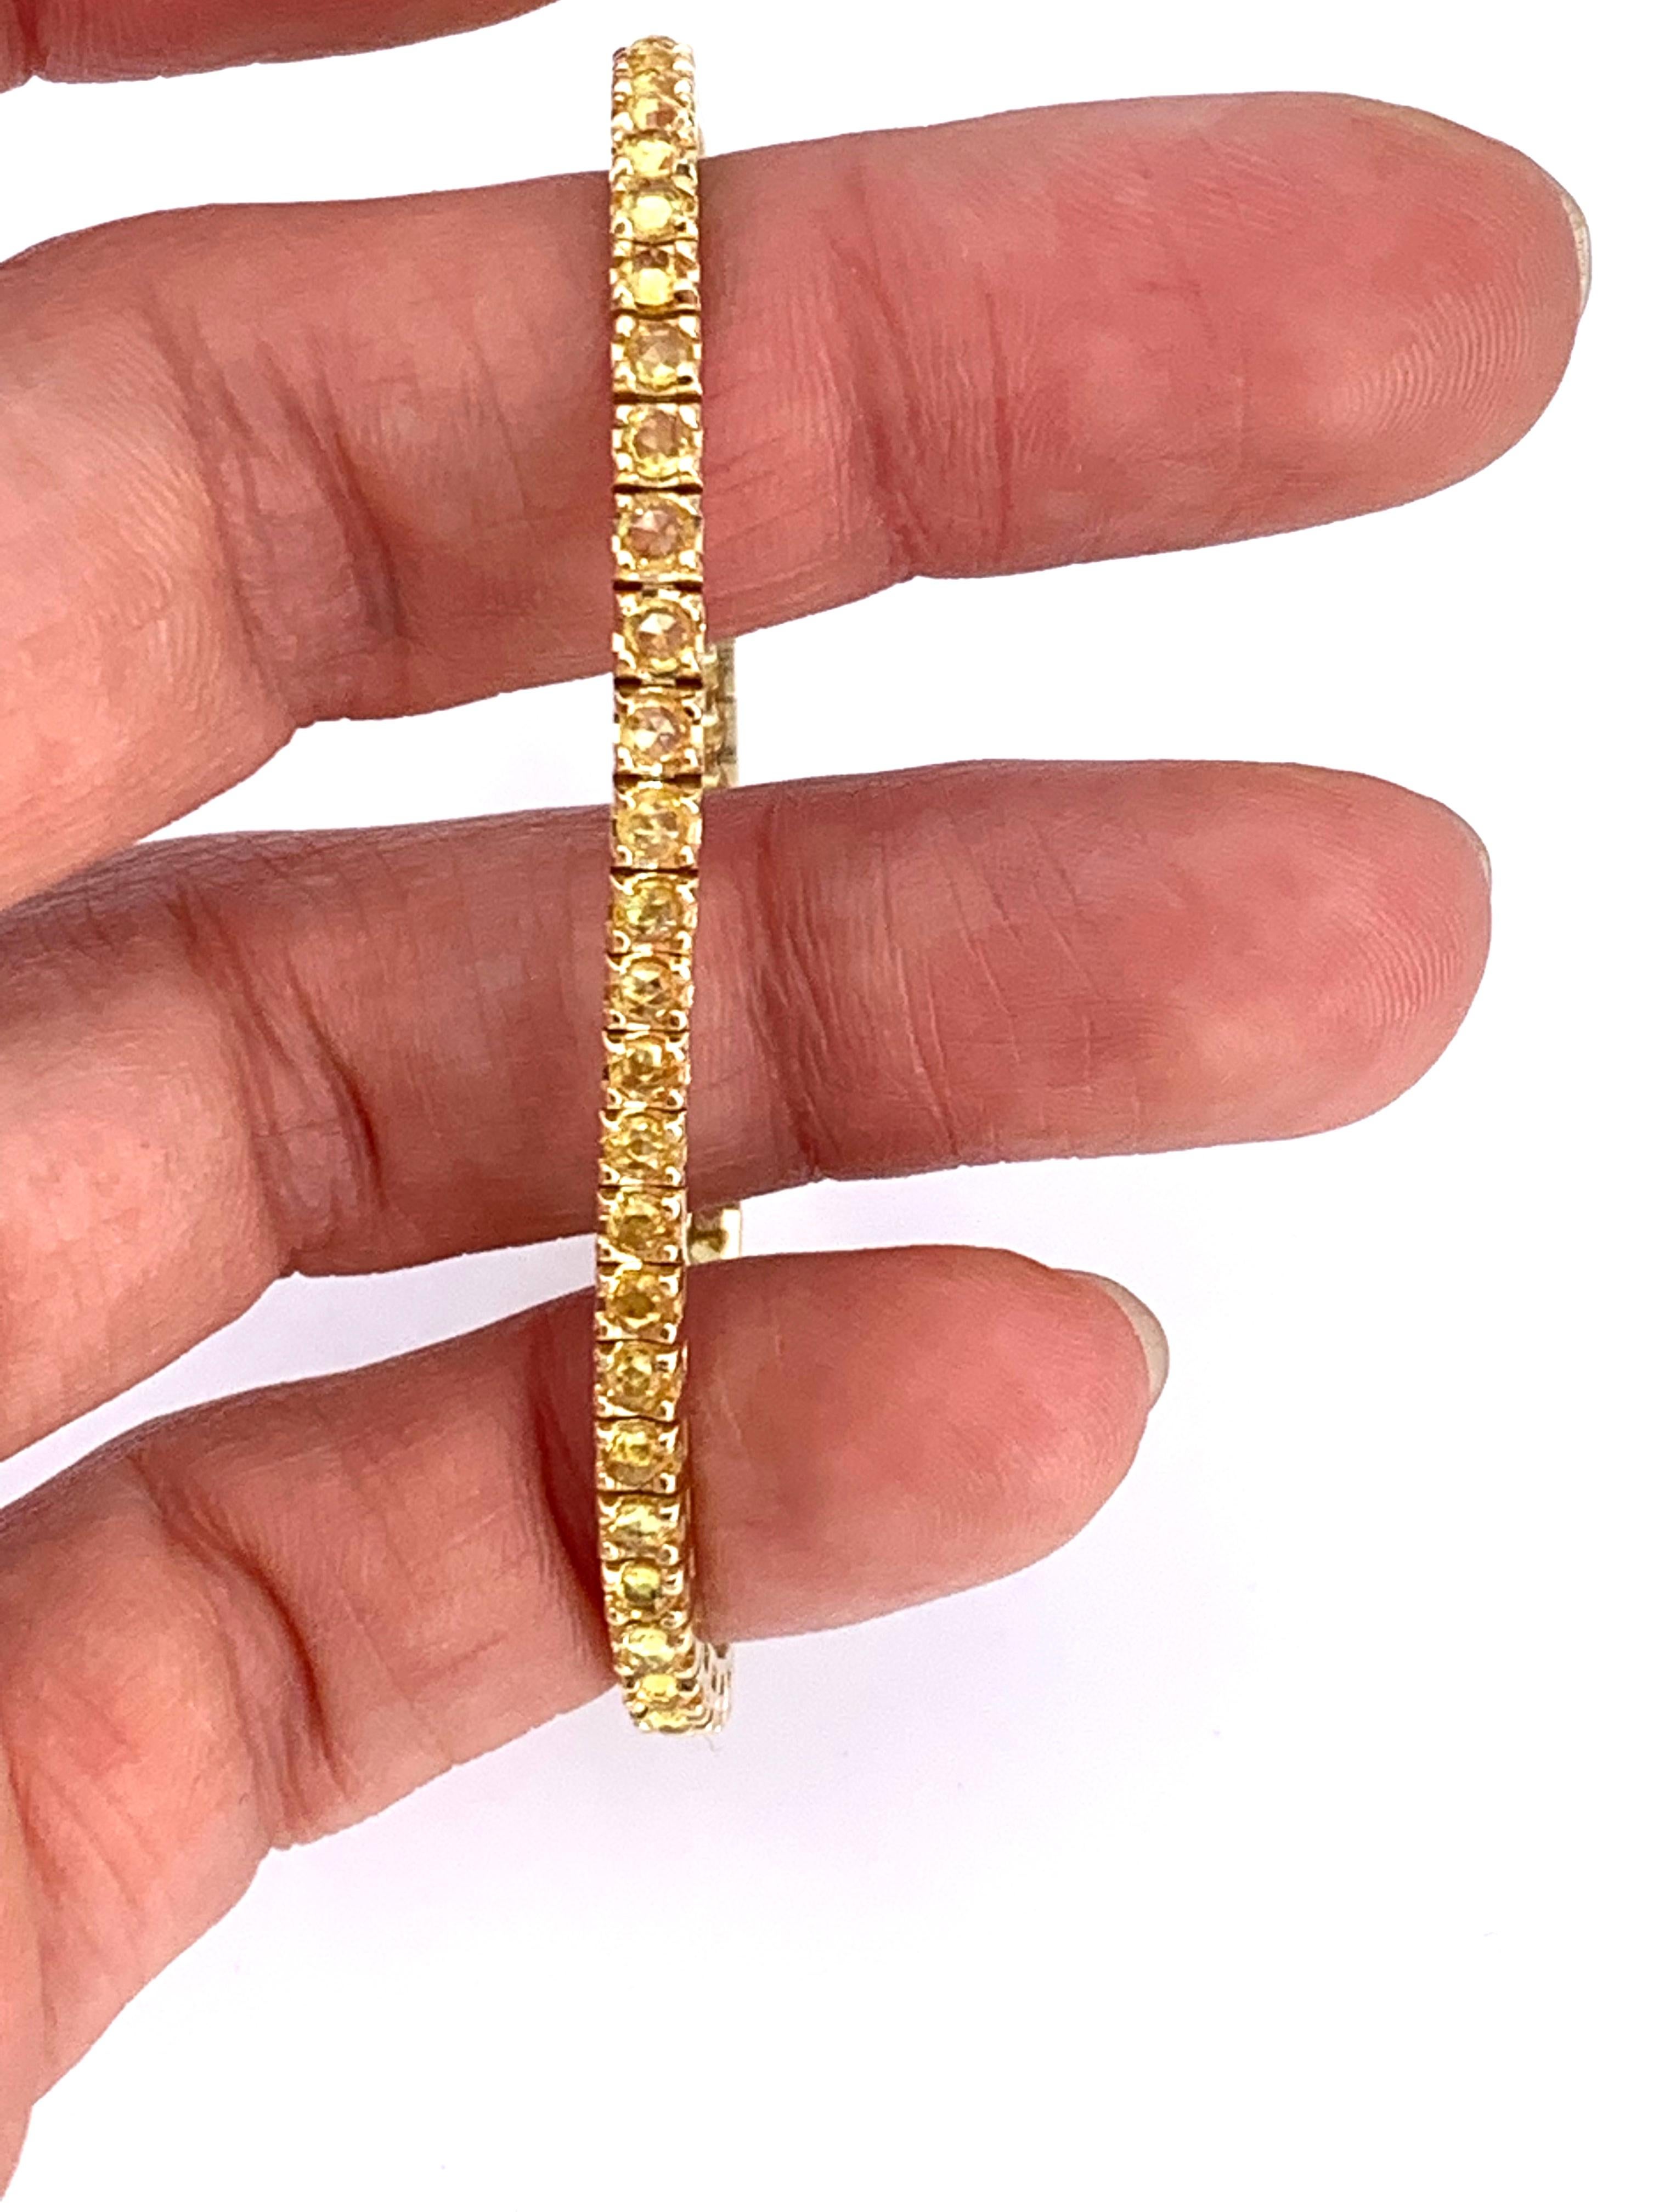 Taille rose Bracelet tennis unisexe en or jaune 18 carats avec saphirs jaunes de 4,34 carats